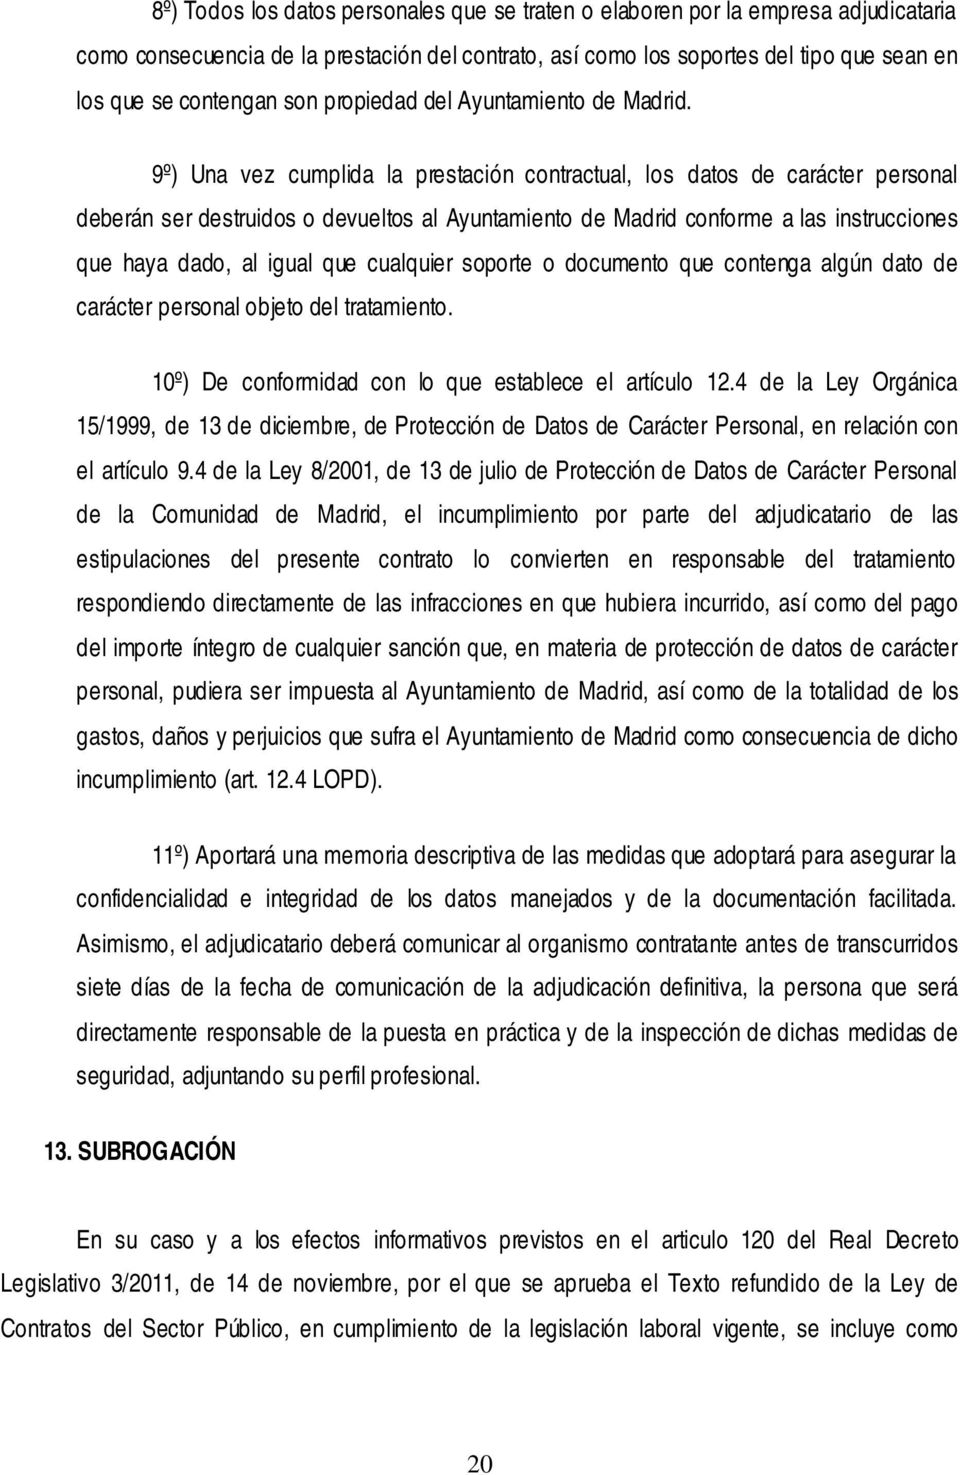 9º) Una vez cumplida la prestación contractual, los datos de carácter personal deberán ser destruidos o devueltos al Ayuntamiento de Madrid conforme a las instrucciones que haya dado, al igual que